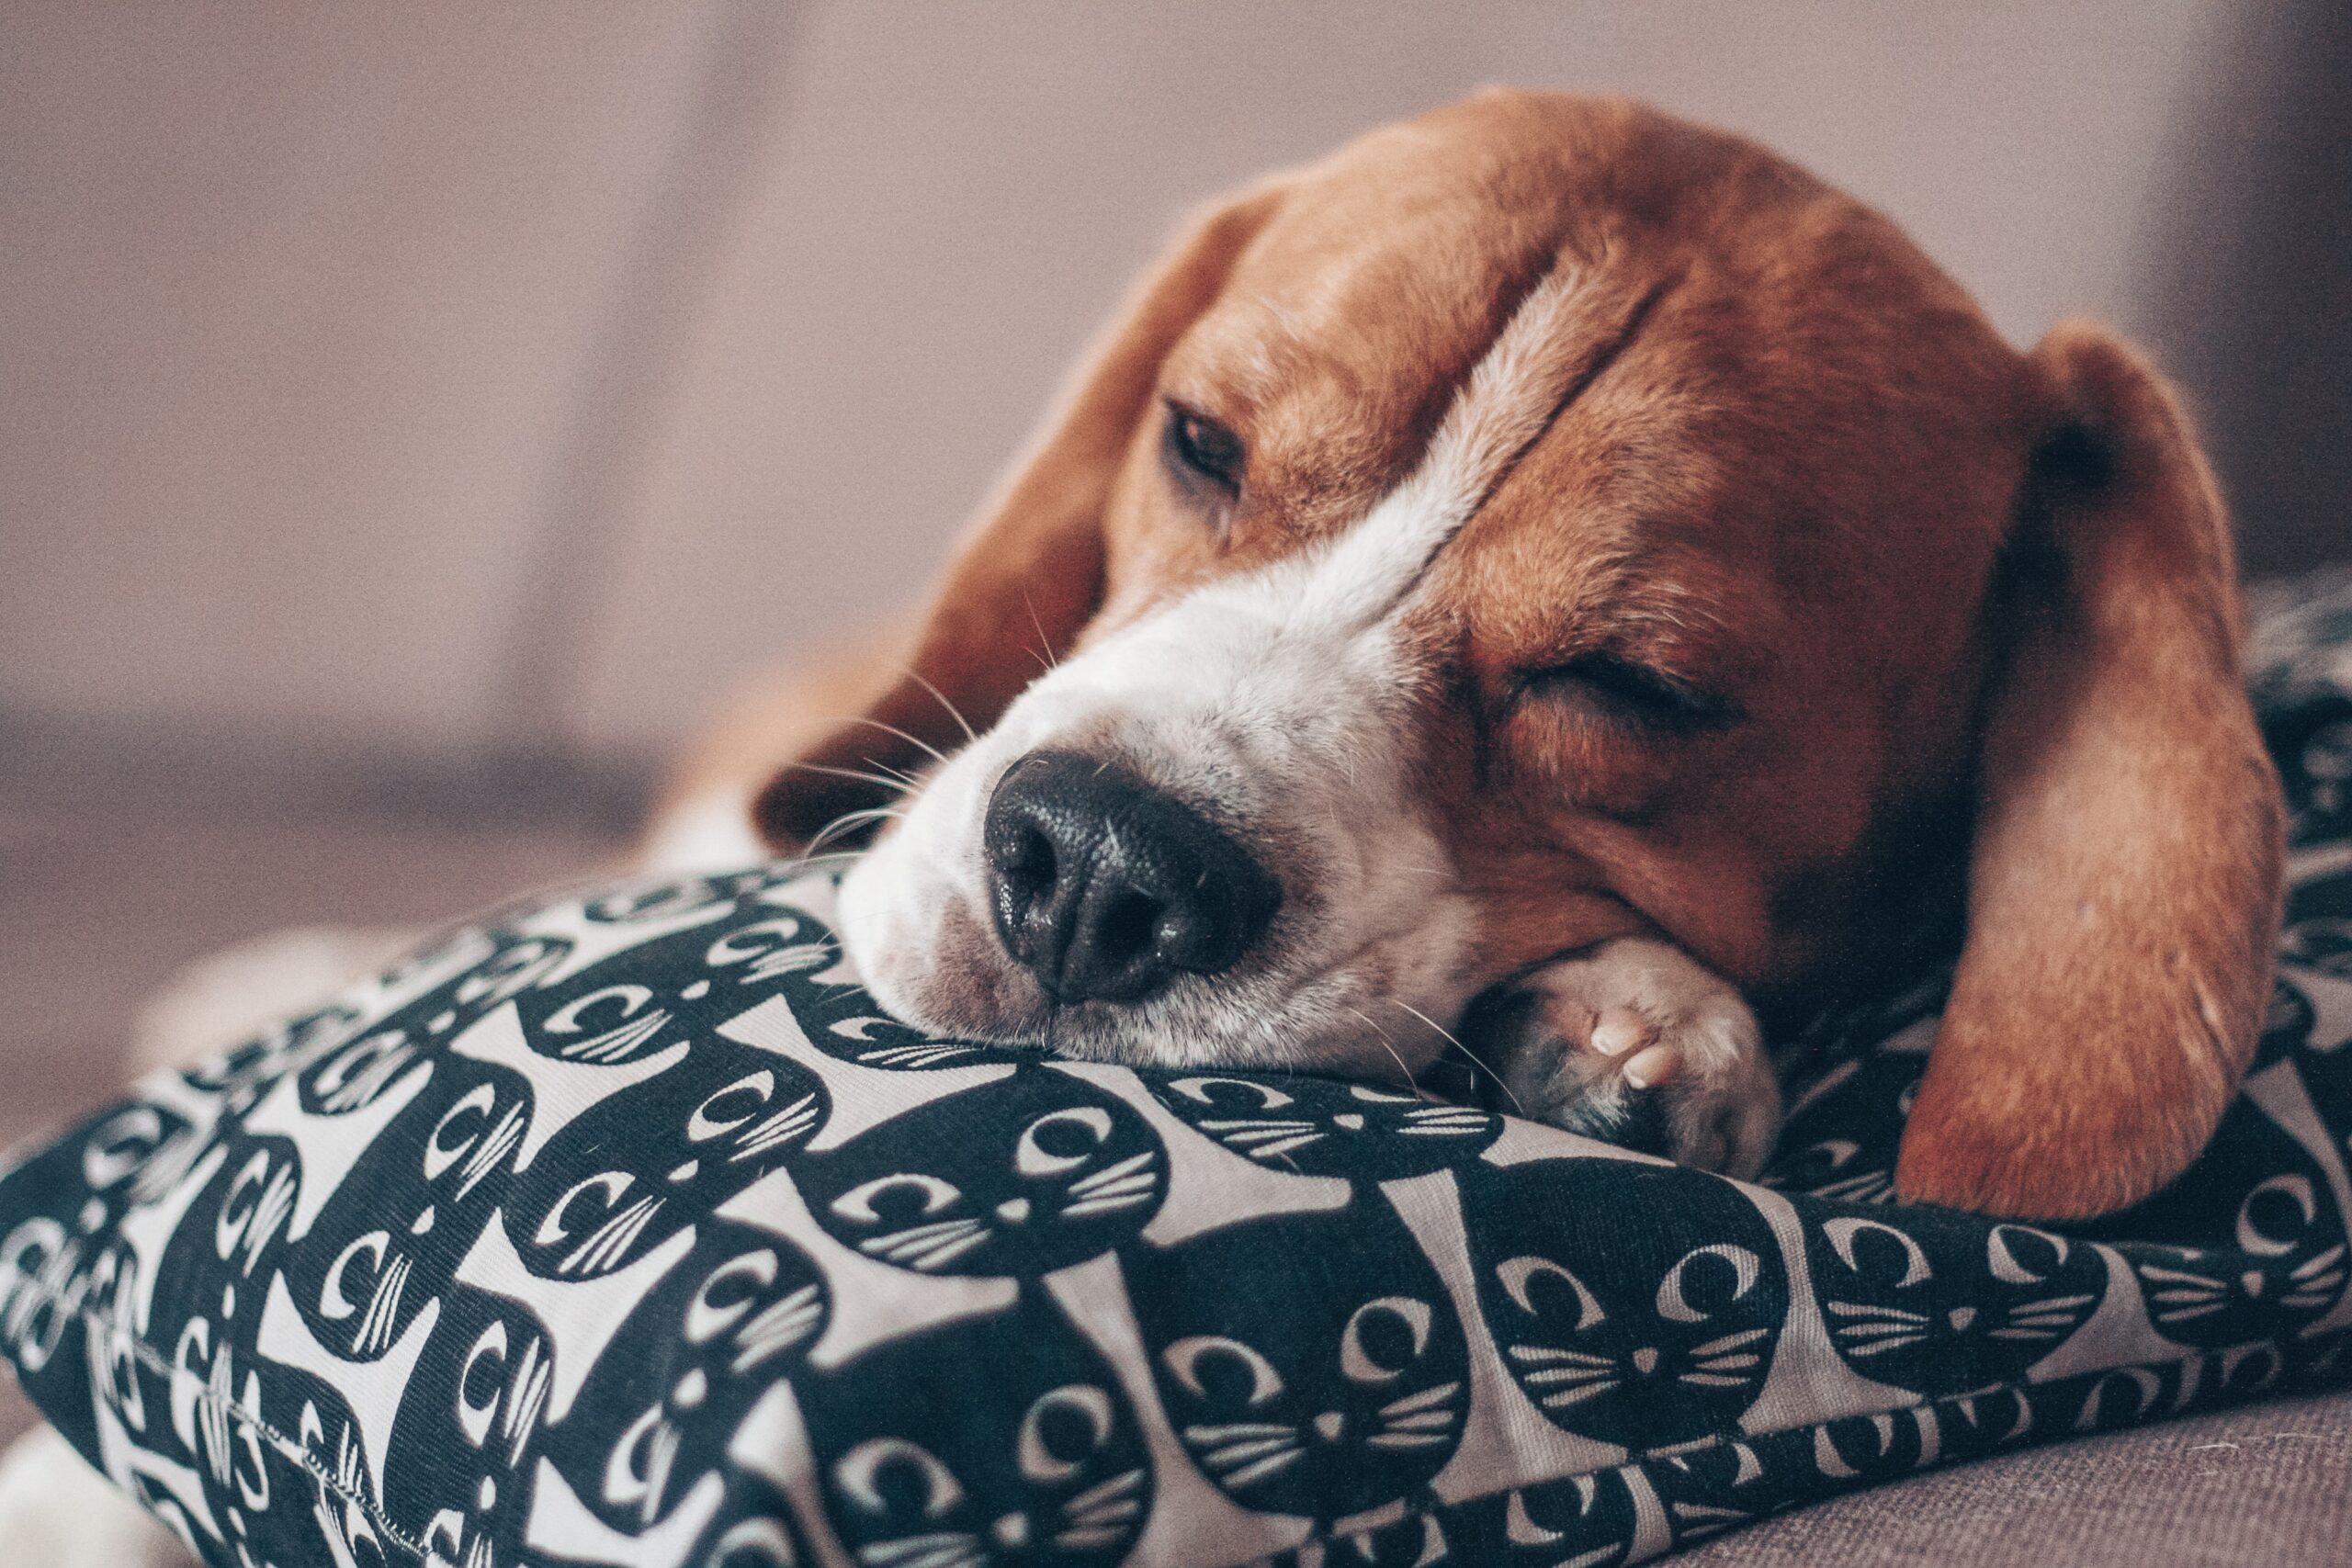 cane beagle che dorme